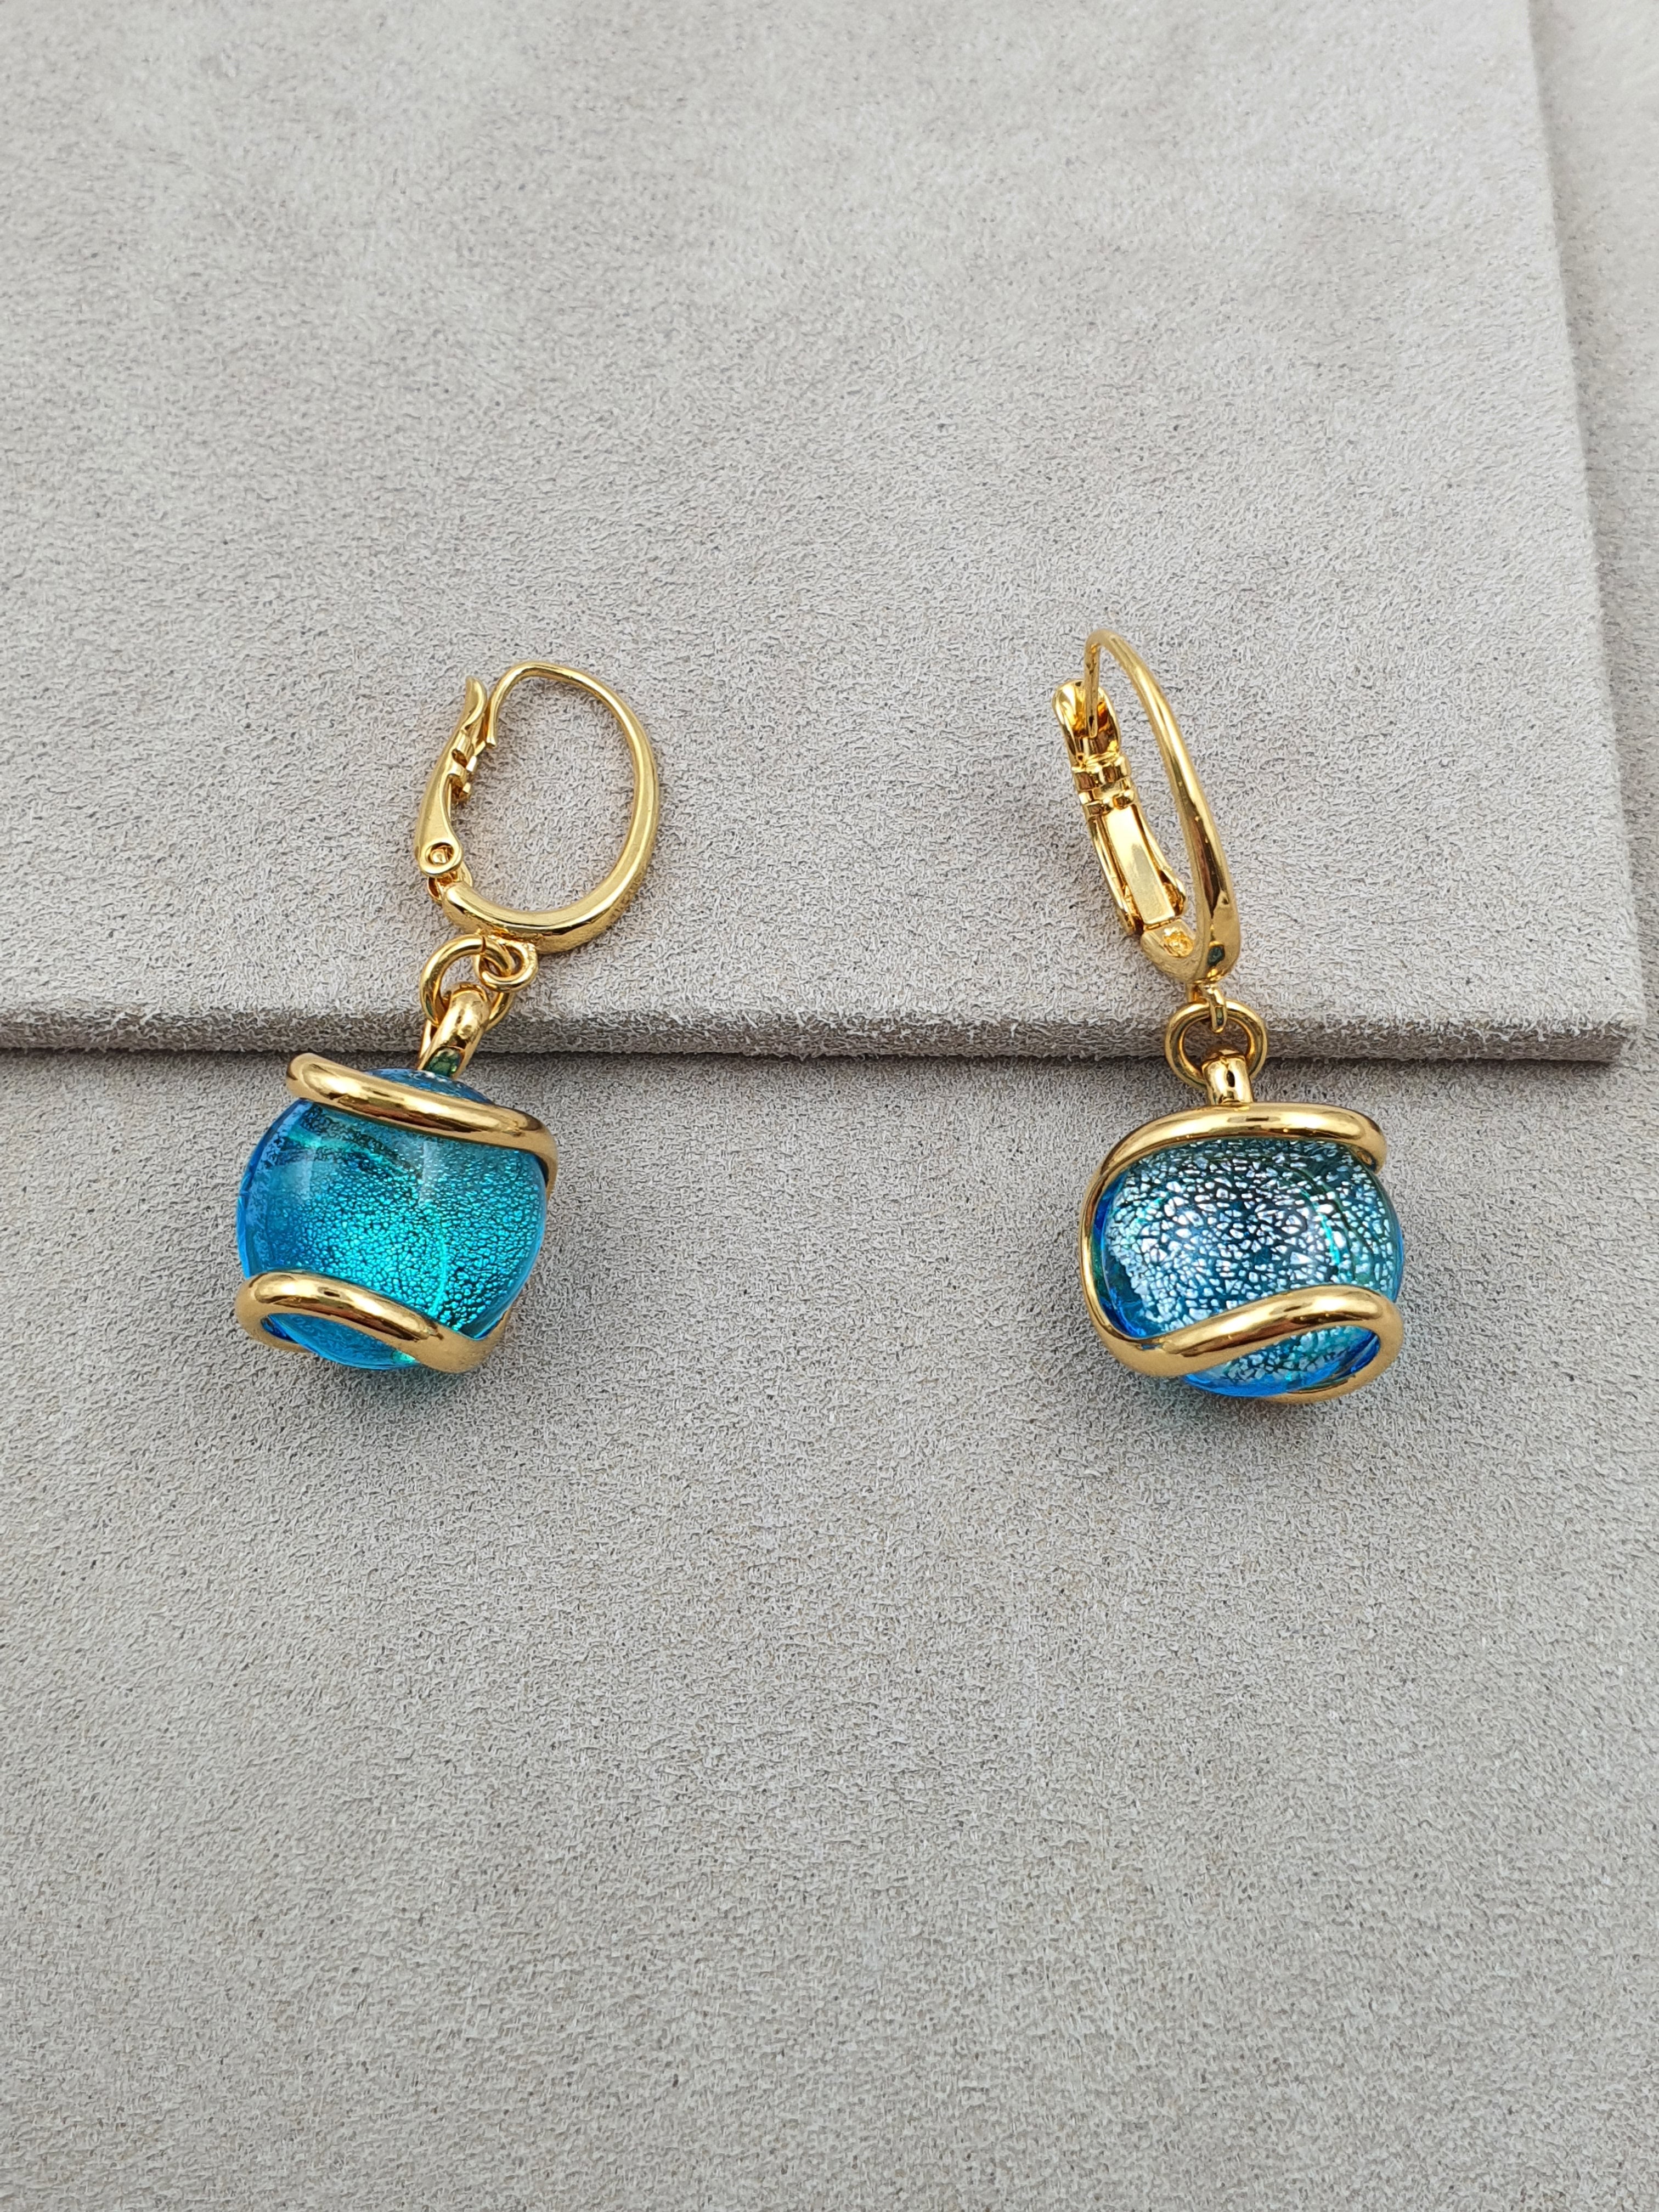 Nautilus - Turquoise - Gold - Earrings - Andrea Marazzini